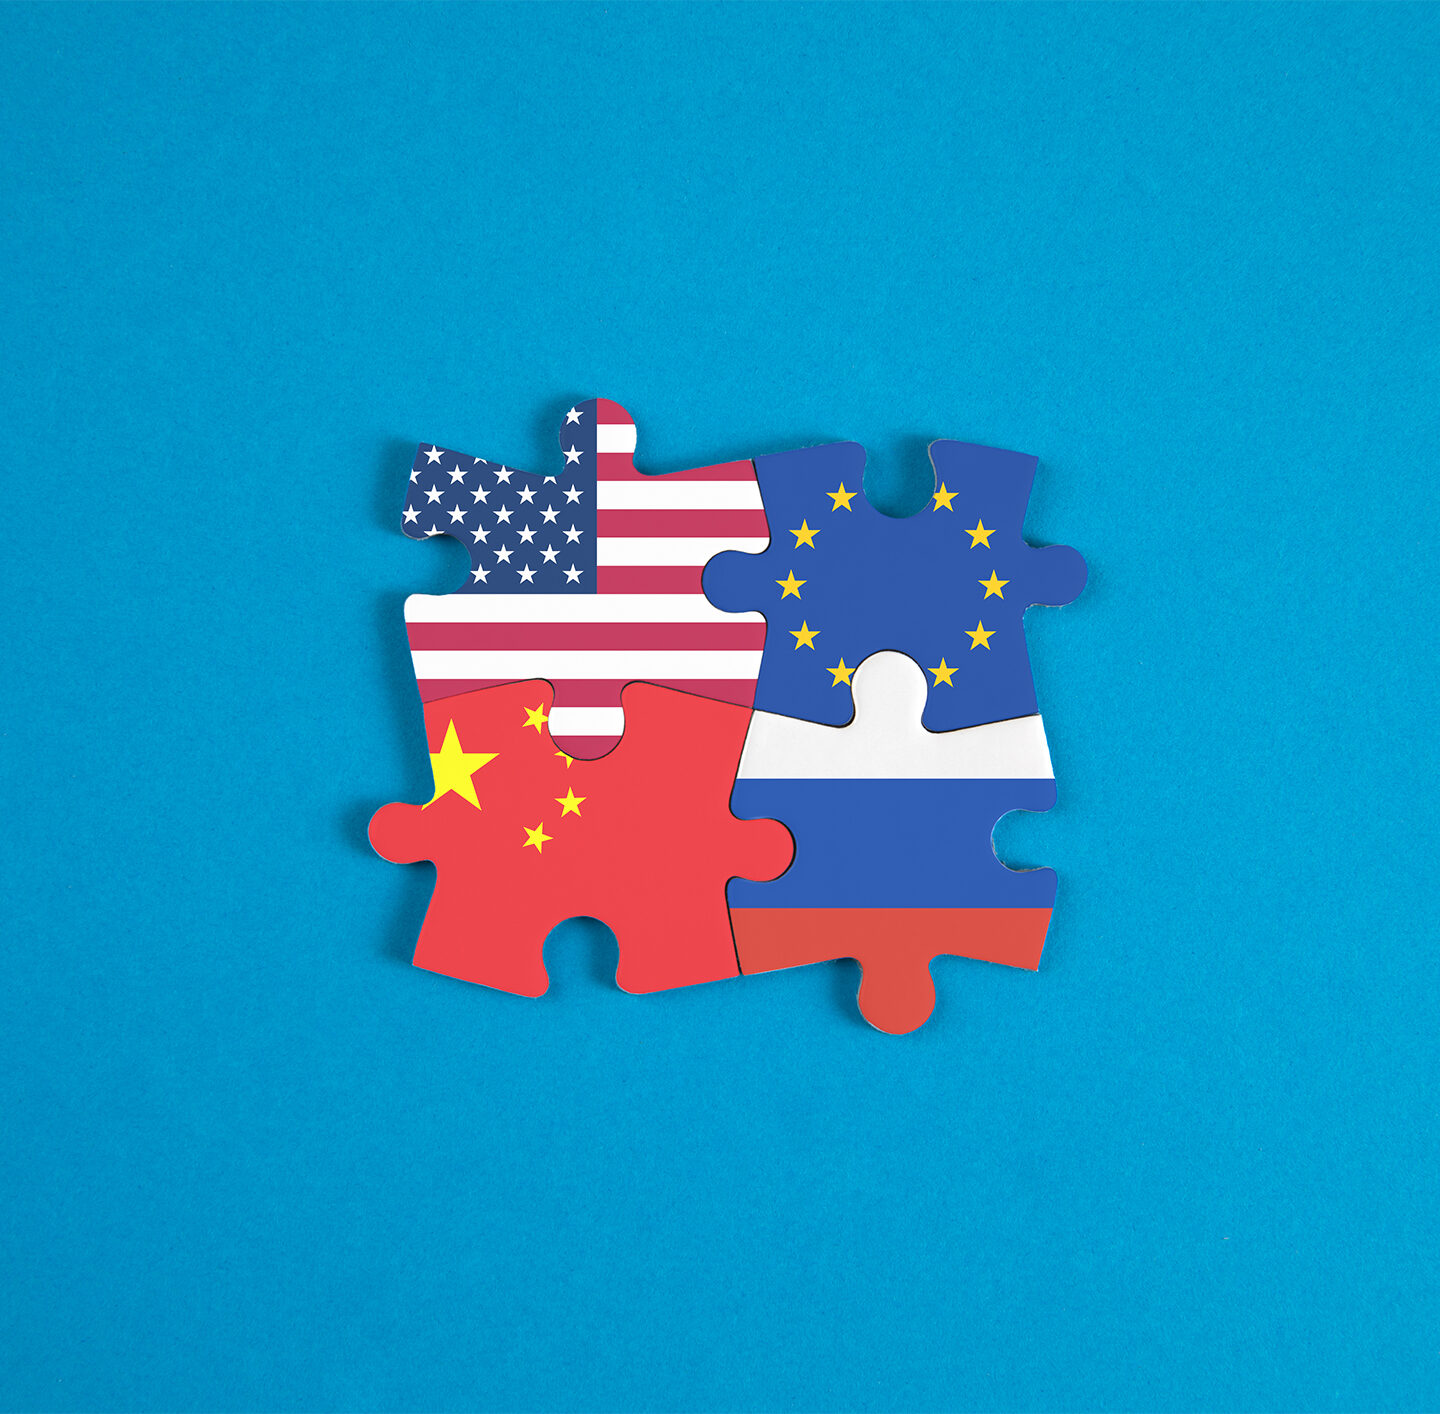 Die Flaggen der USA, China, Europa und Russland als Puzzleteile ineinander gesteckt.